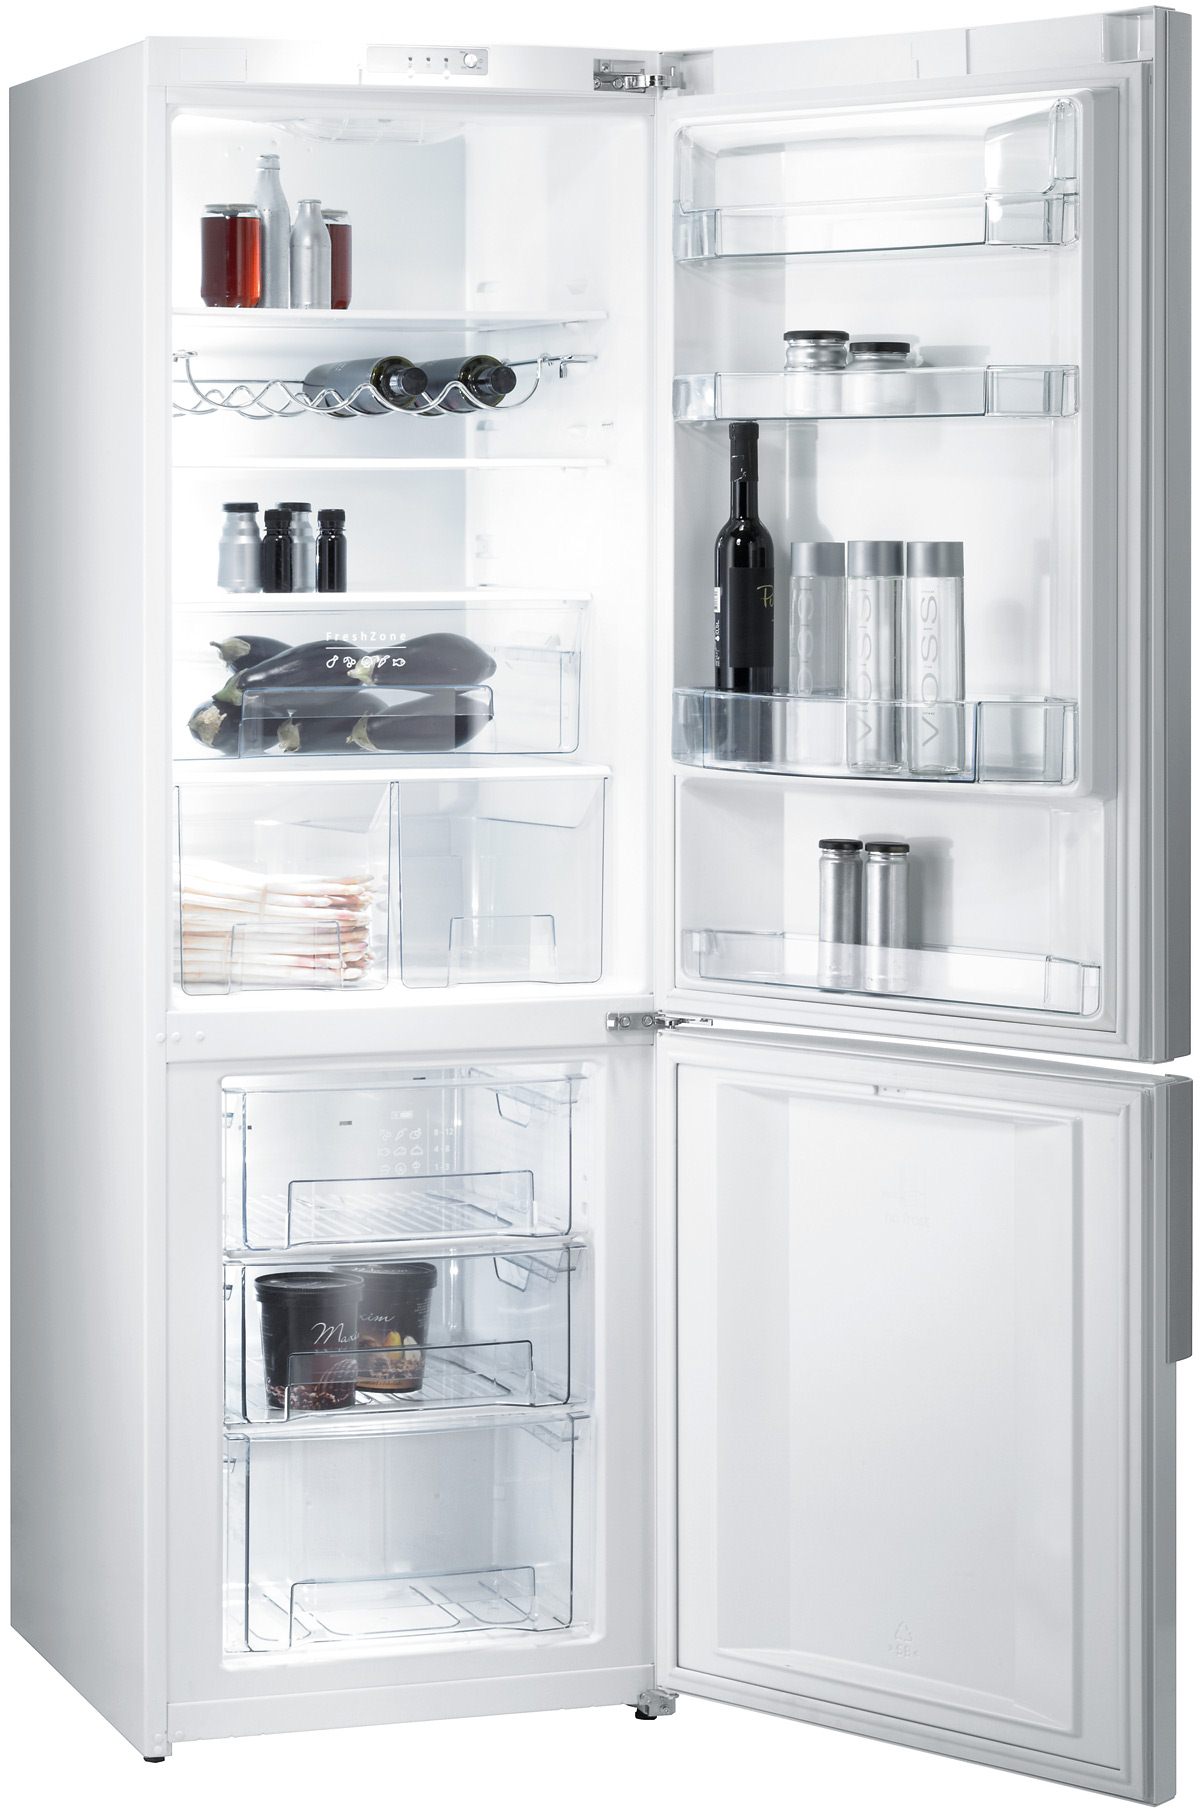 Холодильник Gorenje NRK 61 W2